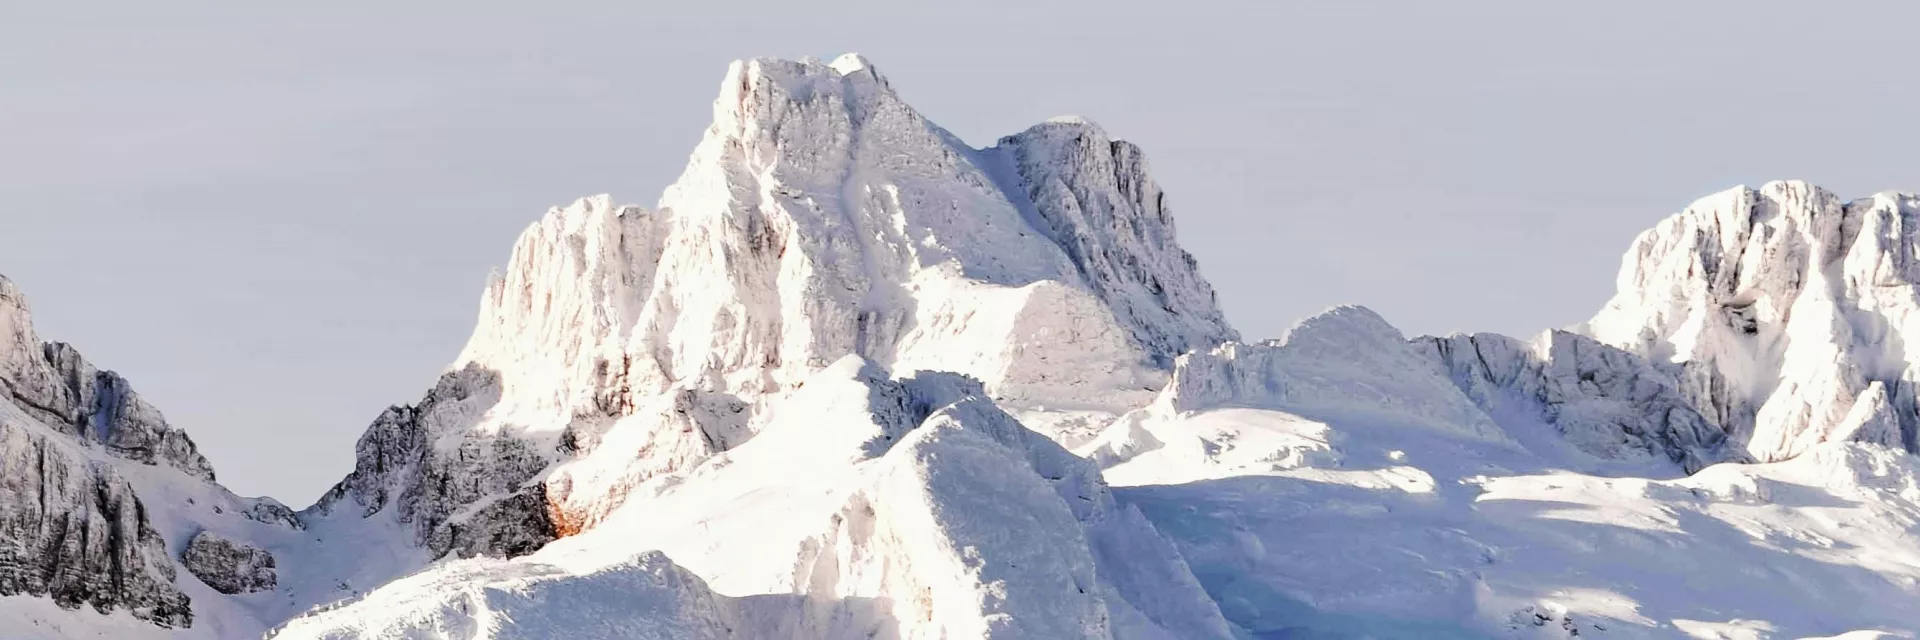 Pyrénées - montagnes - massifs montagneux - ski